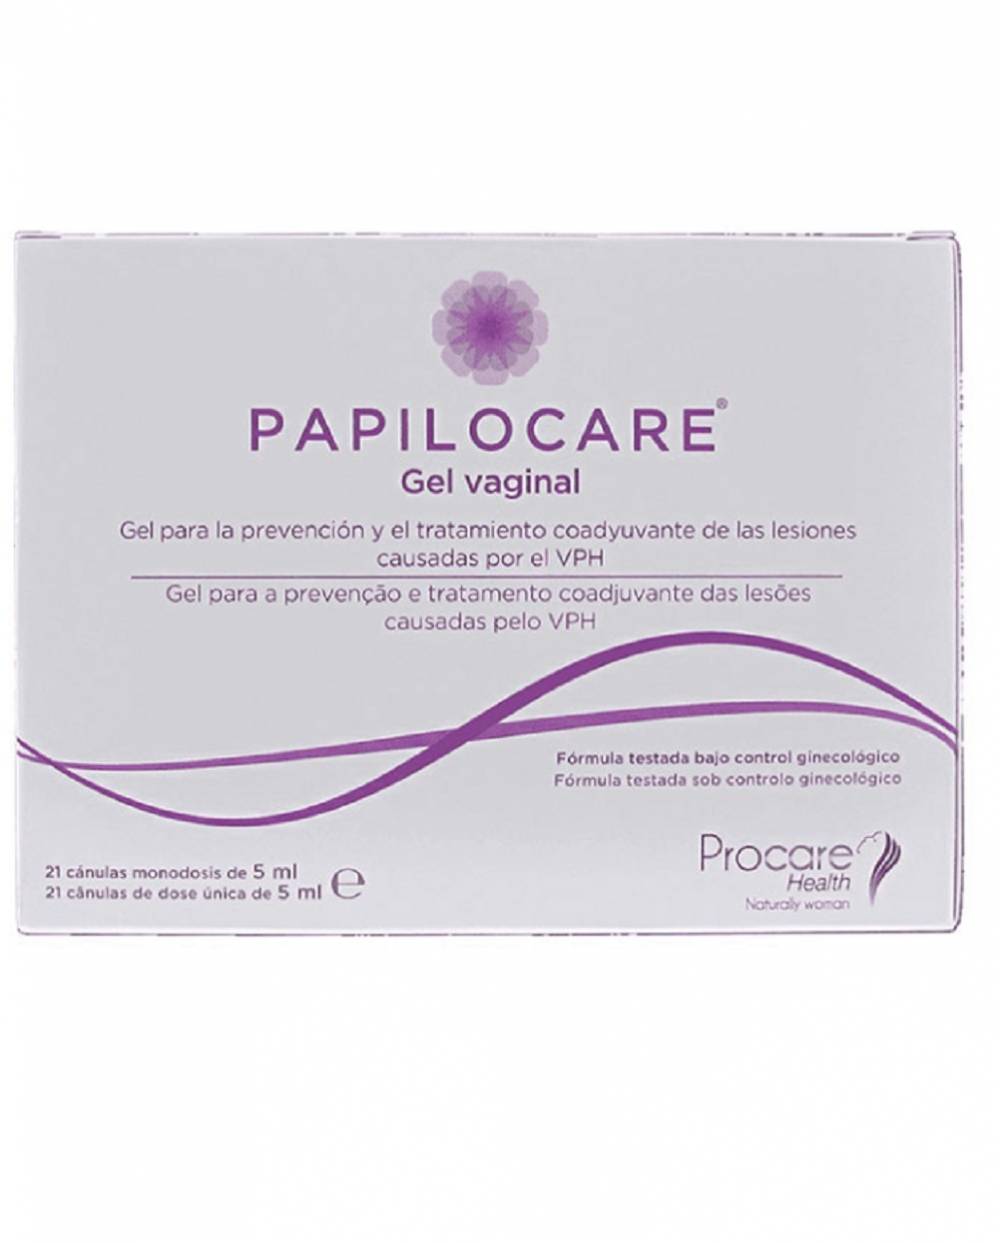 Papilocare gel vaginal 21 cánulas Monodosis 5 ml